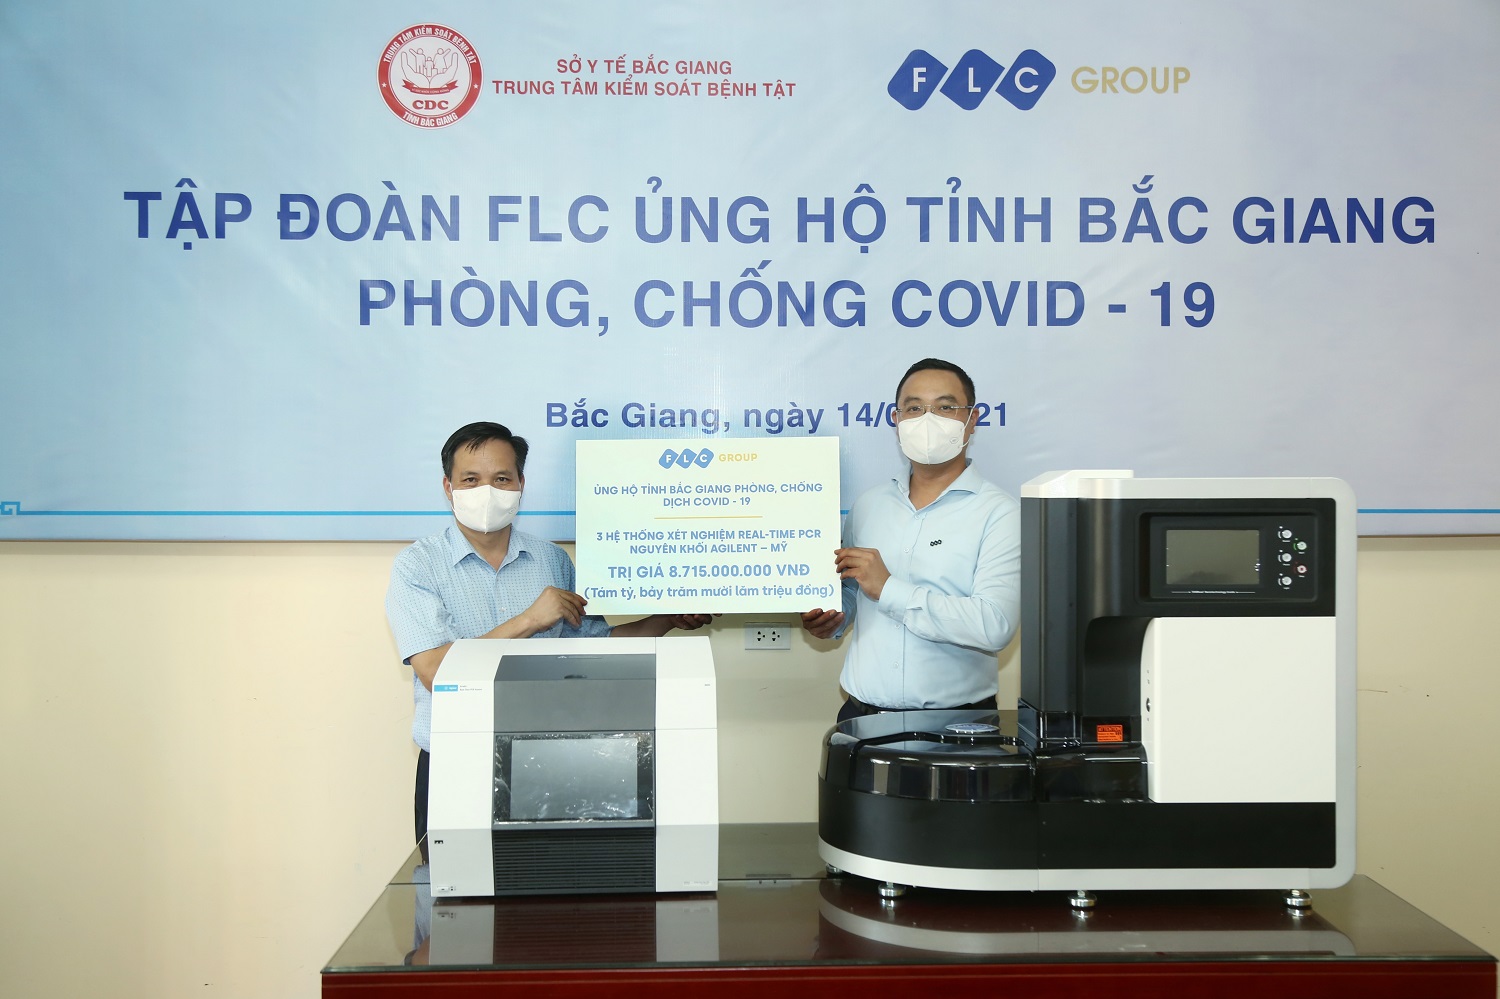 Tập đoàn FLC trao tặng tỉnh Bắc Giang 3 hệ thống xét nghiệm Covid-19 trị giá gần 9 tỷ đồng